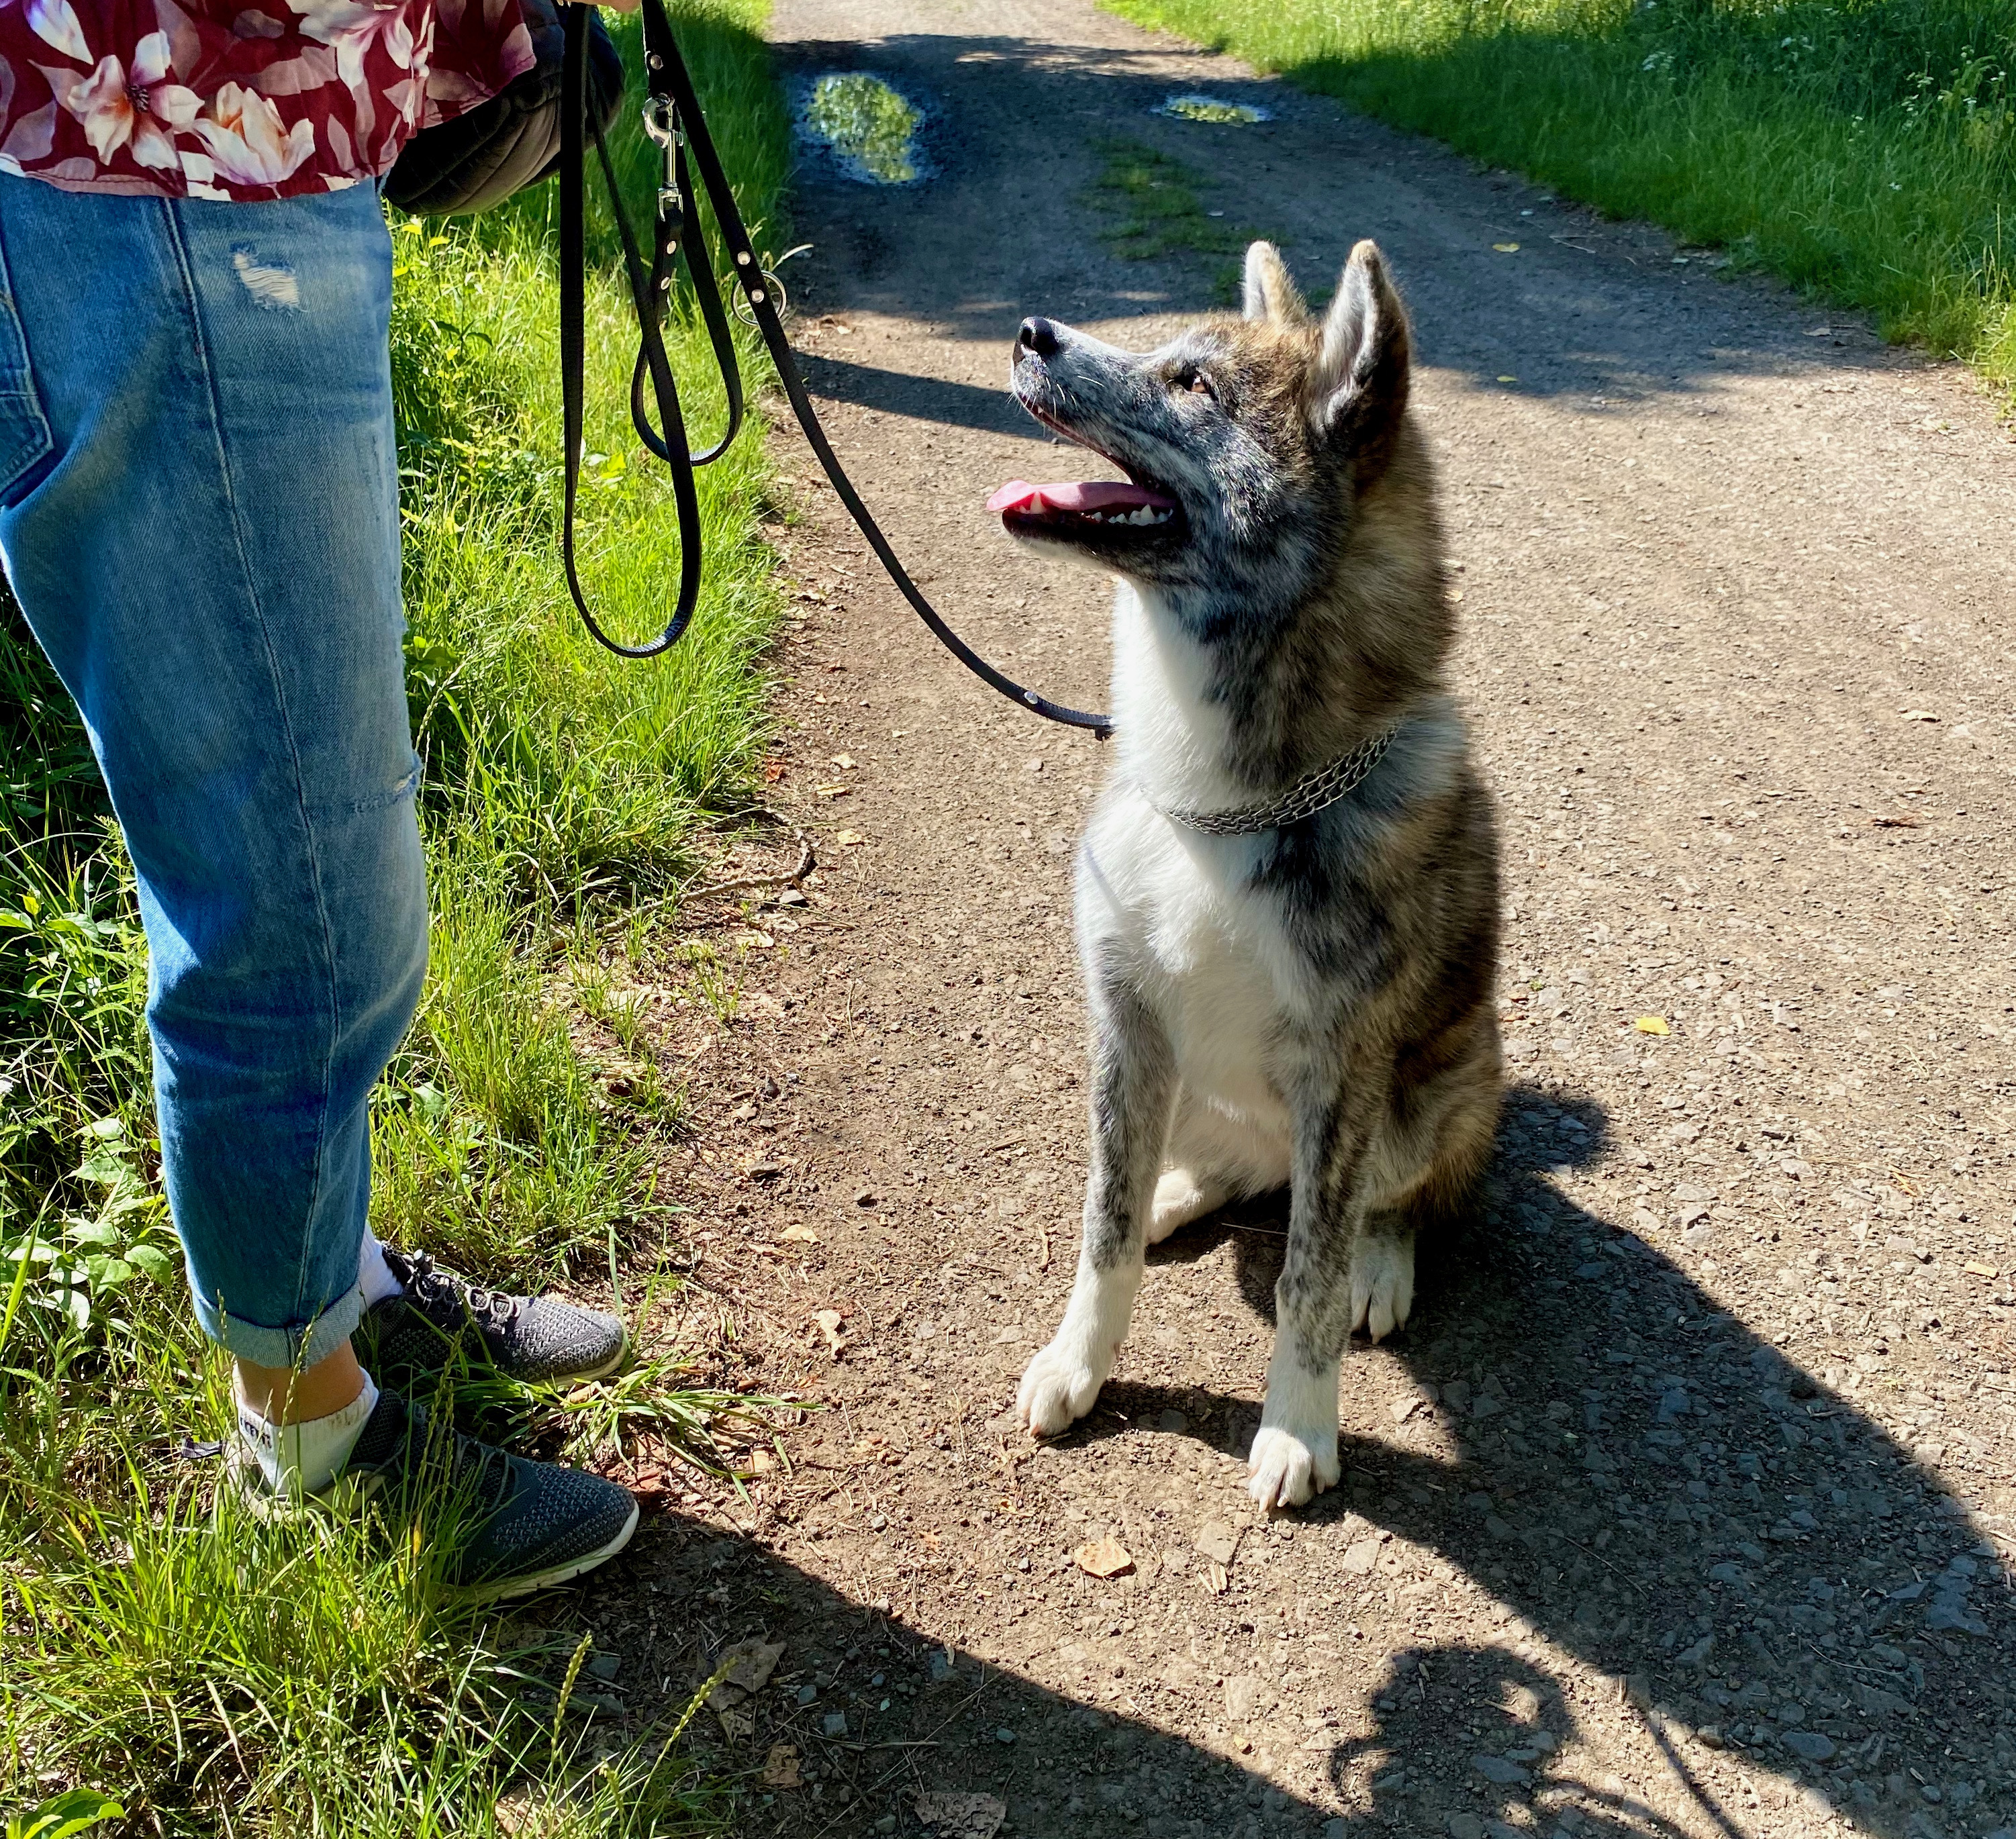 EInzeltraining, ein Hund-Mensch-Team auf einem Feldweg